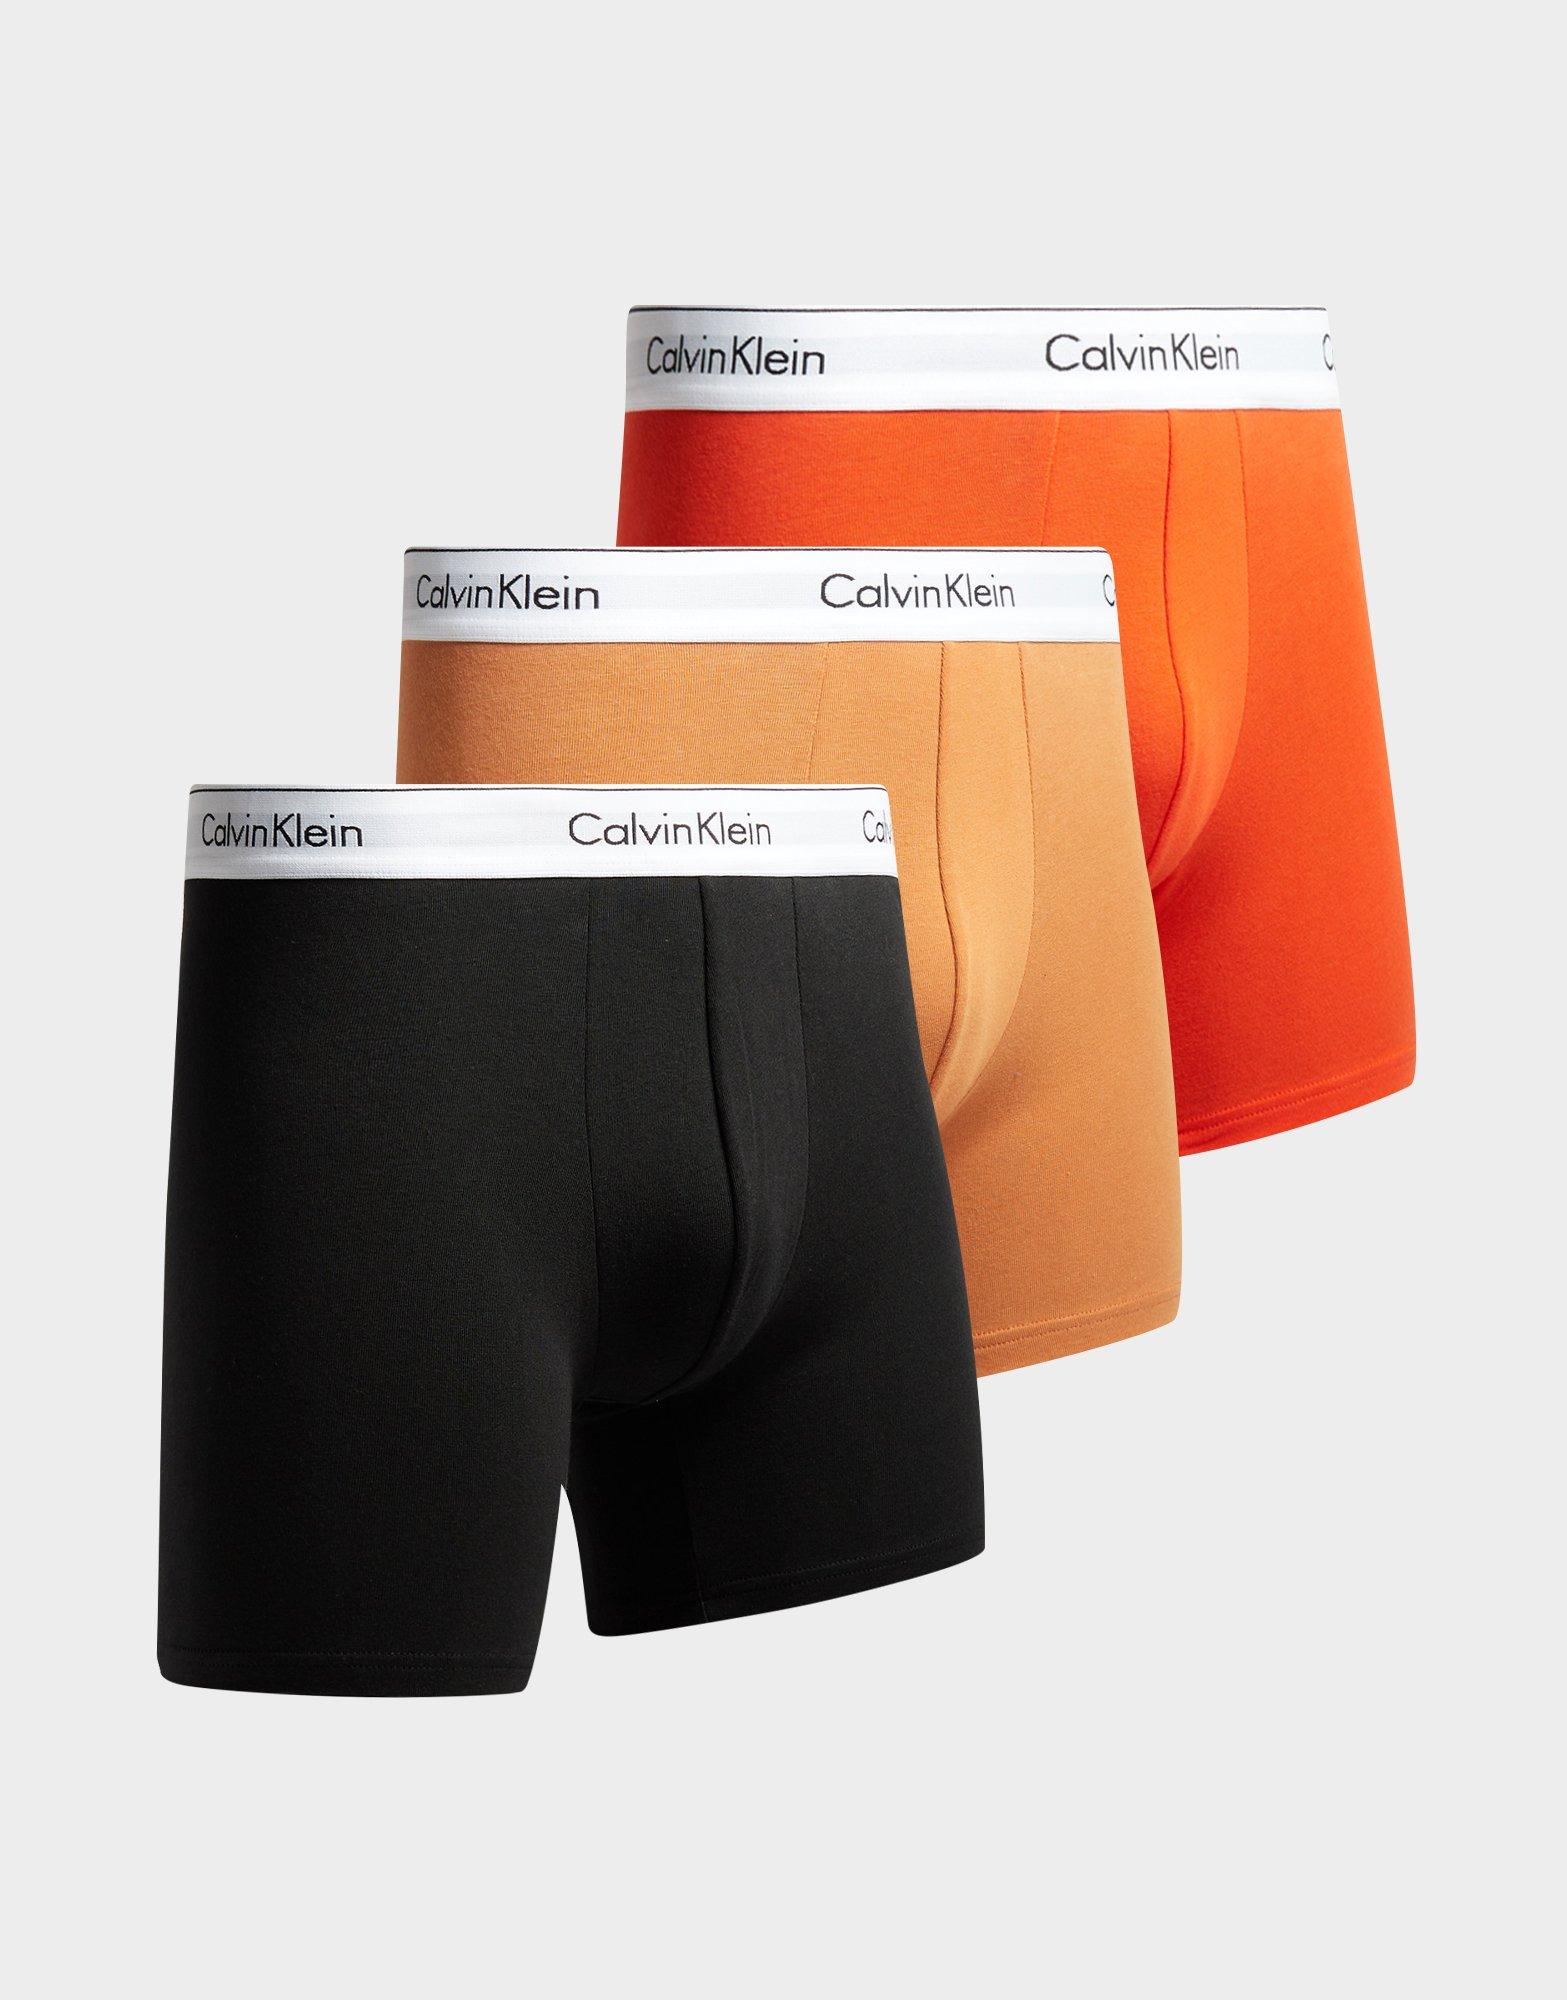 más y más Autónomo Presa Calvin Klein Underwear pack de 3 Boxers en Multicolor | JD Sports España